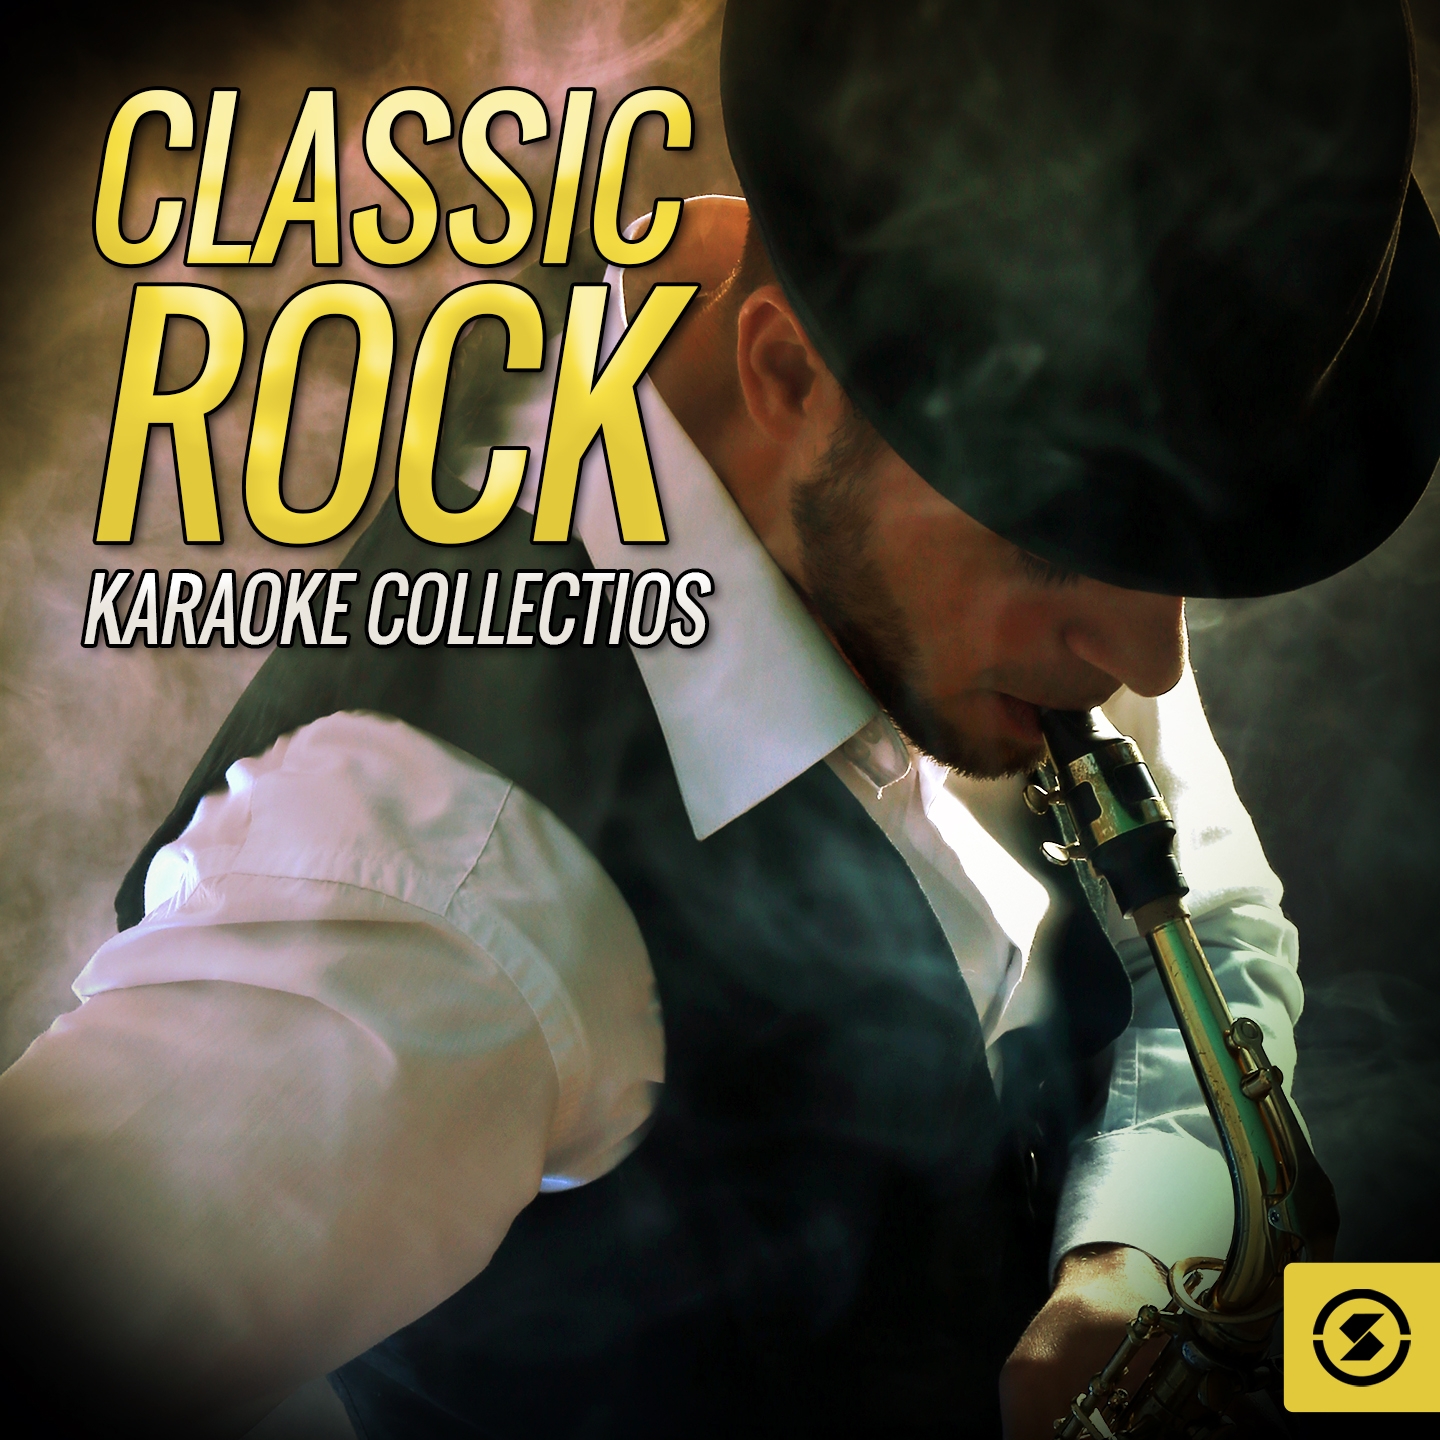 Classic Rock Karaoke Collectios